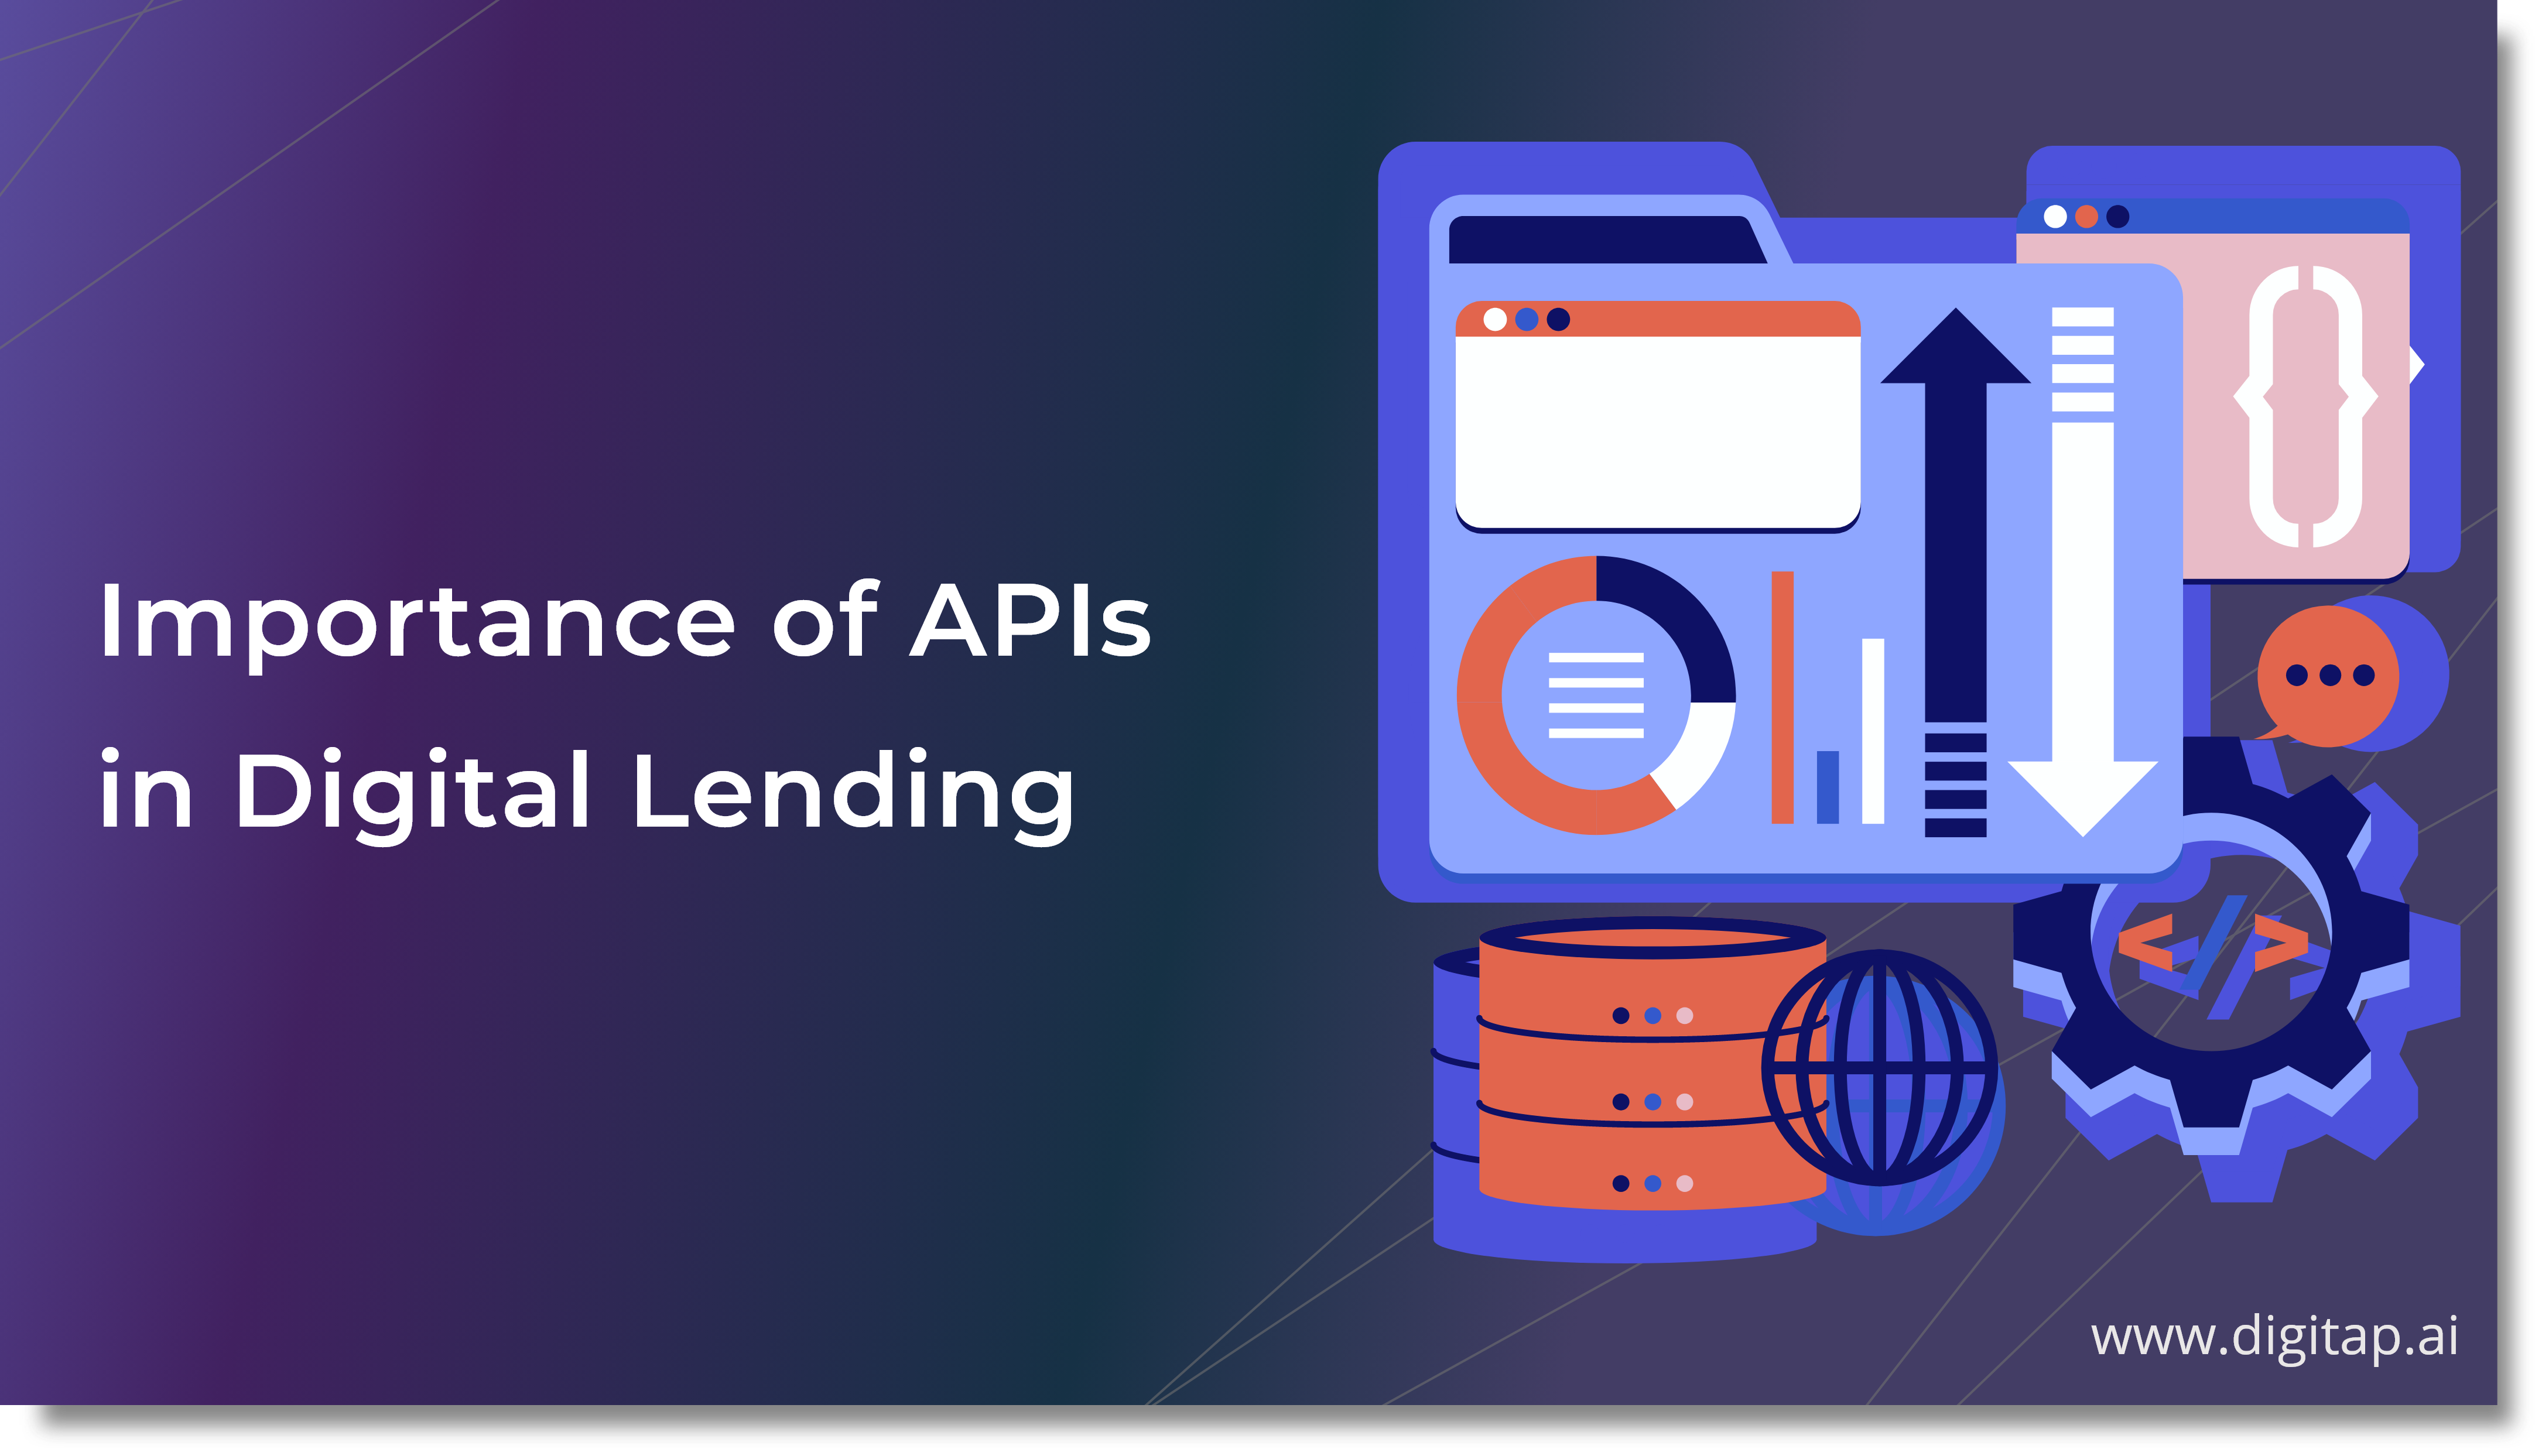 Importance of APIs for Digital Lending